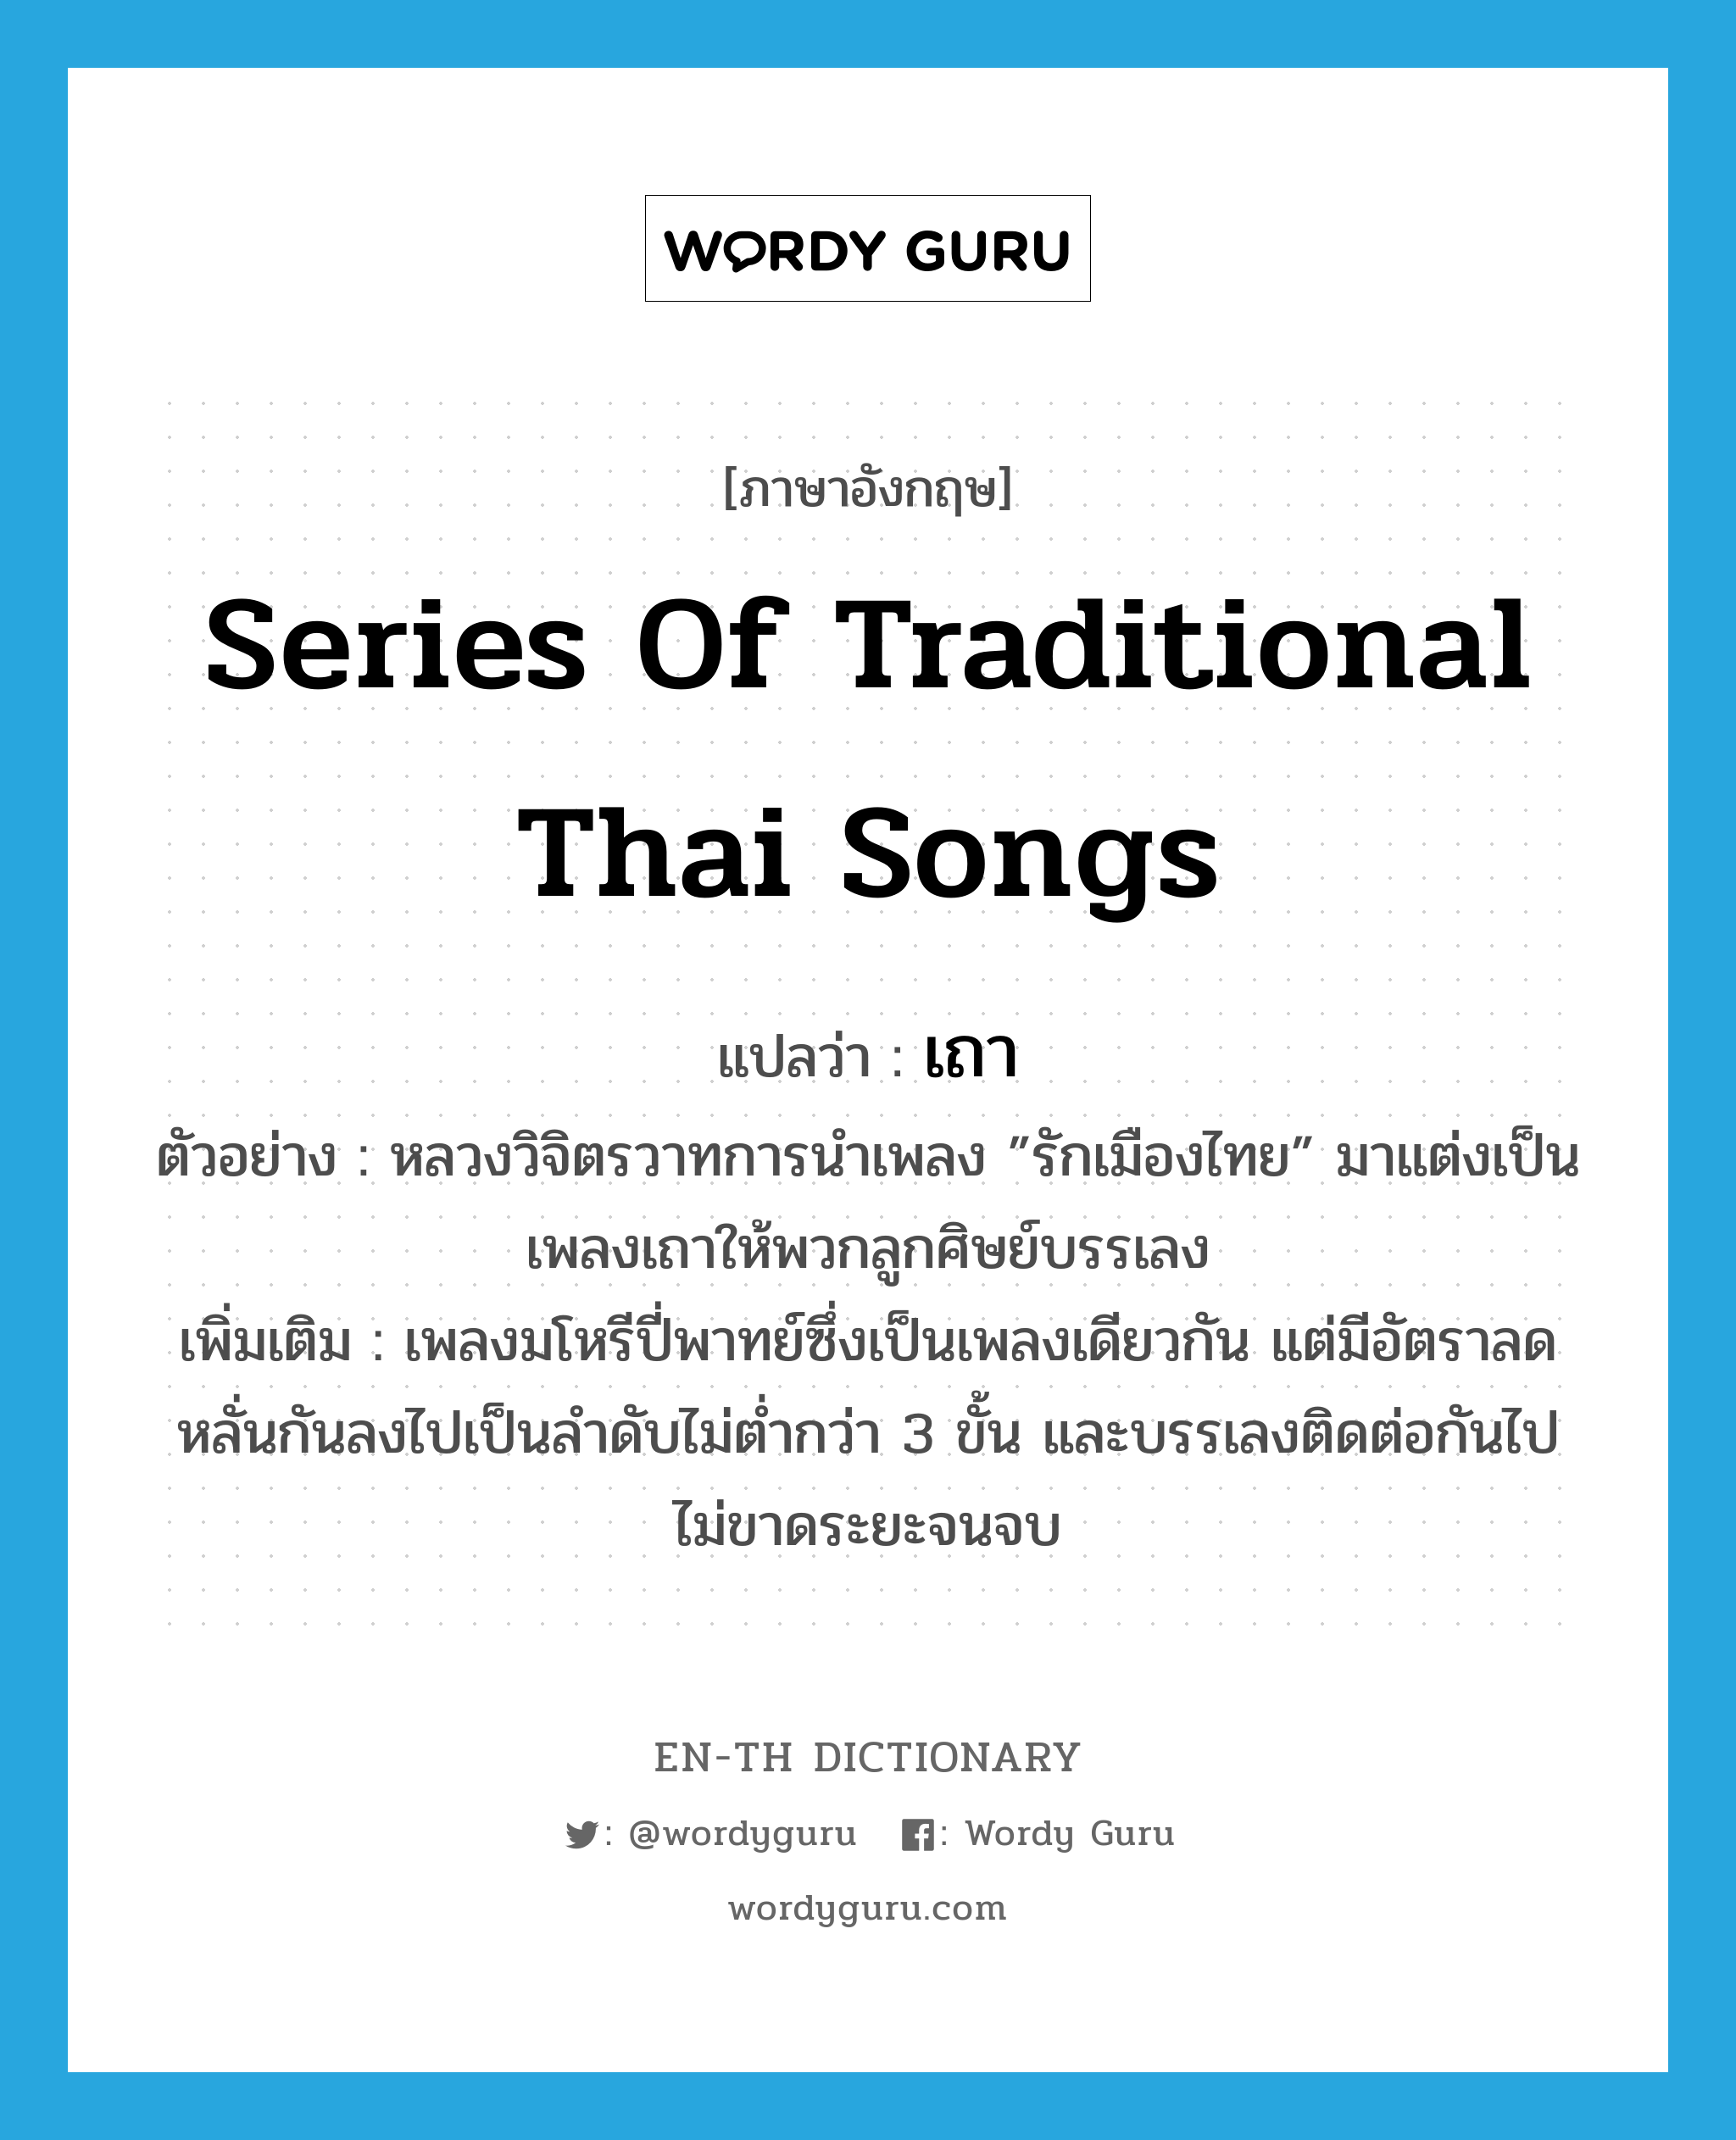 เถา ภาษาอังกฤษ?, คำศัพท์ภาษาอังกฤษ เถา แปลว่า series of traditional Thai songs ประเภท N ตัวอย่าง หลวงวิจิตรวาทการนำเพลง ”รักเมืองไทย” มาแต่งเป็นเพลงเถาให้พวกลูกศิษย์บรรเลง เพิ่มเติม เพลงมโหรีปี่พาทย์ซึ่งเป็นเพลงเดียวกัน แต่มีอัตราลดหลั่นกันลงไปเป็นลำดับไม่ต่ำกว่า 3 ขั้น และบรรเลงติดต่อกันไปไม่ขาดระยะจนจบ หมวด N